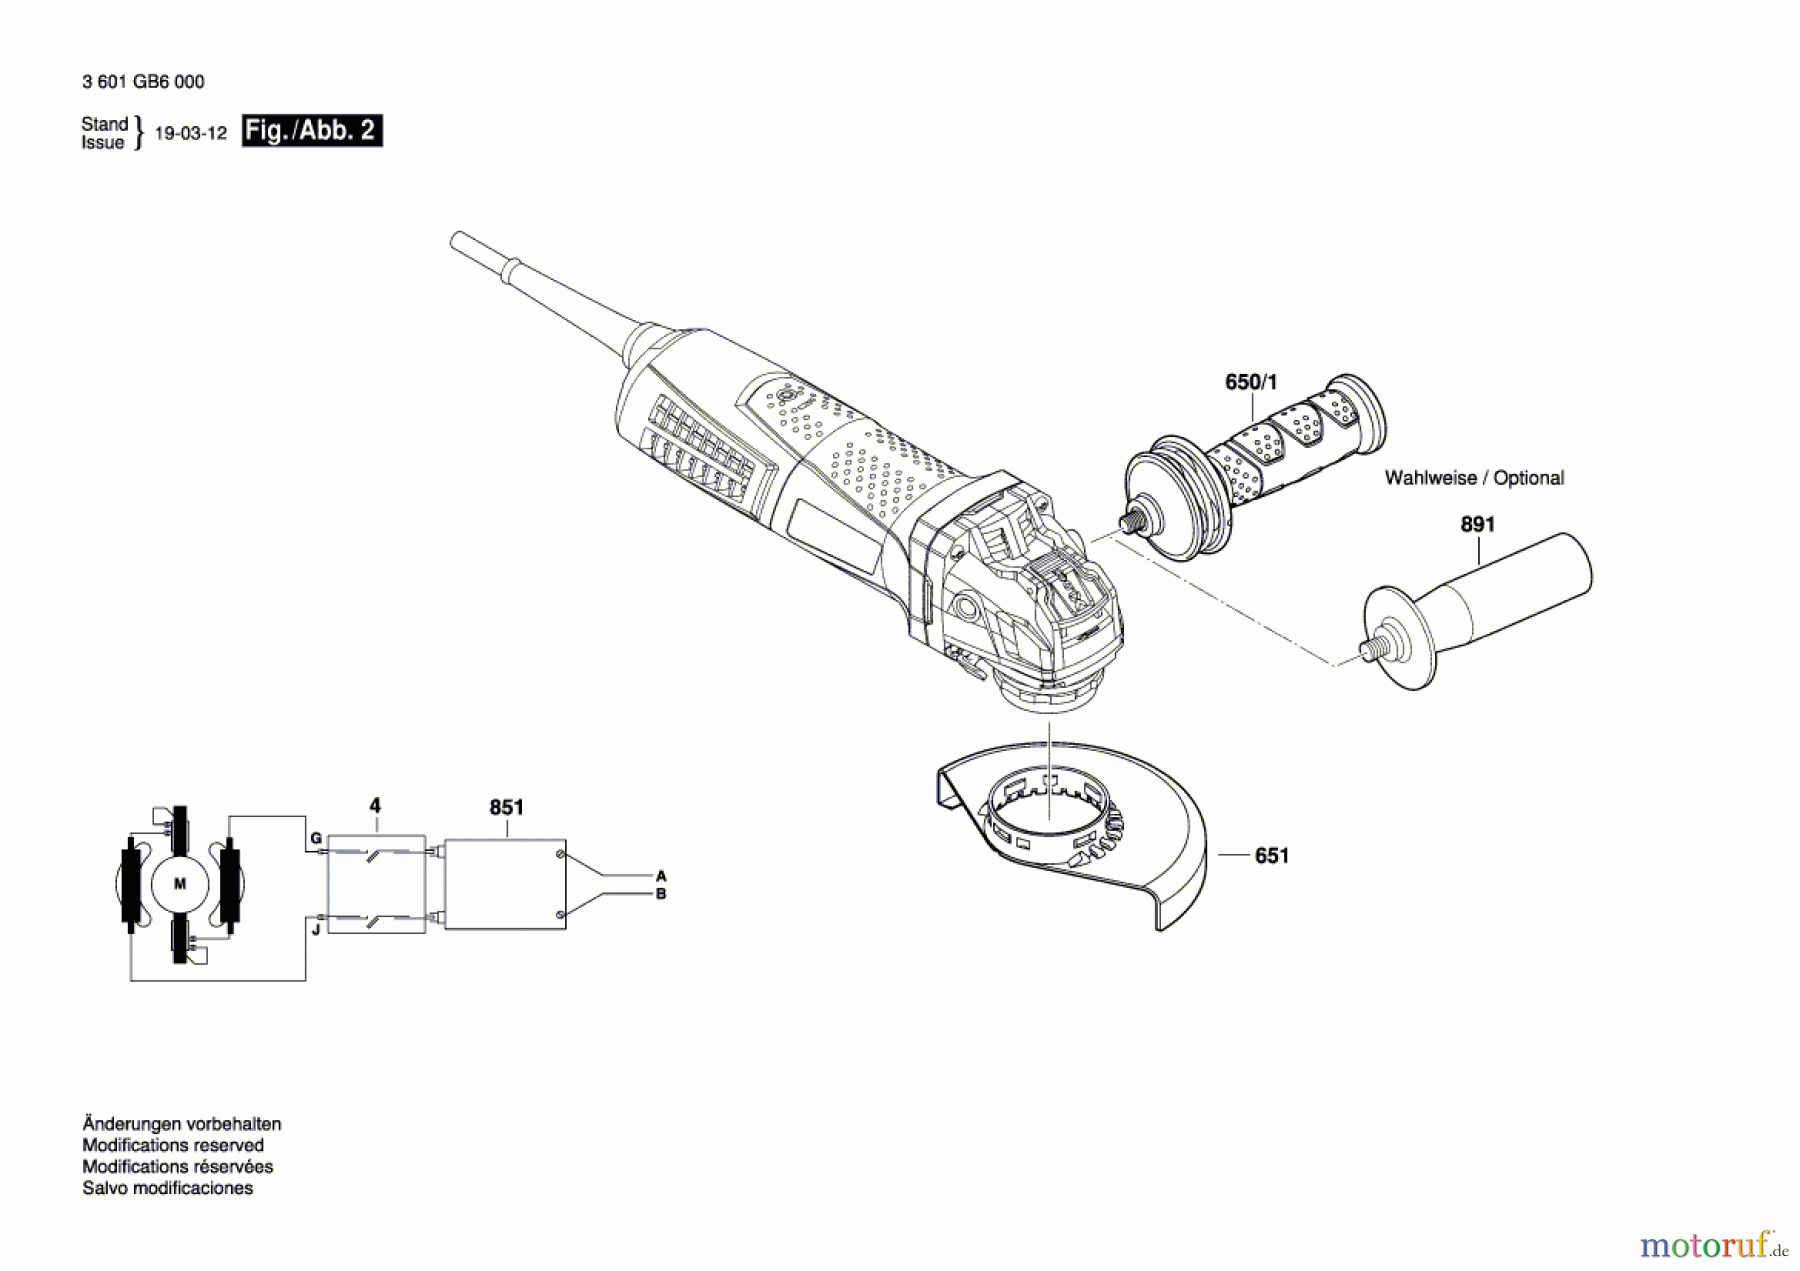  Bosch Werkzeug Winkelschleifer GWX 13-125 S Seite 2